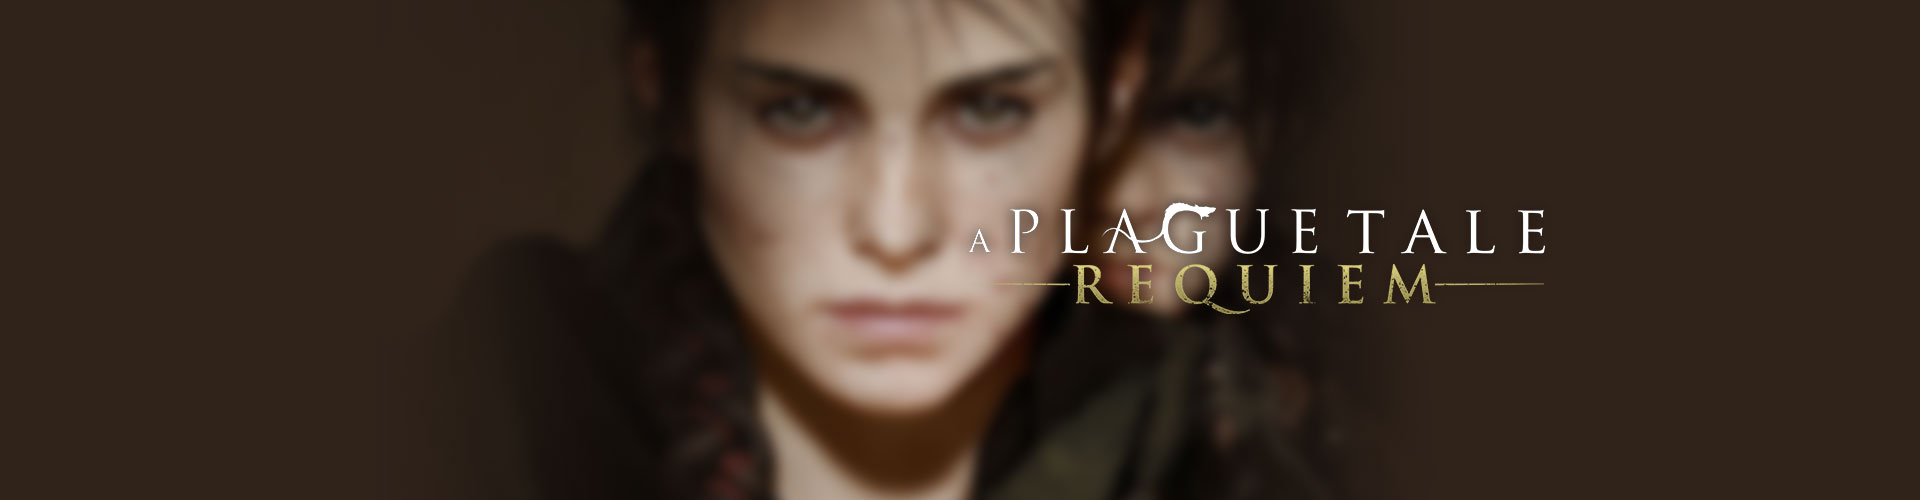 Configuration A Plague Tale : Requiem PC